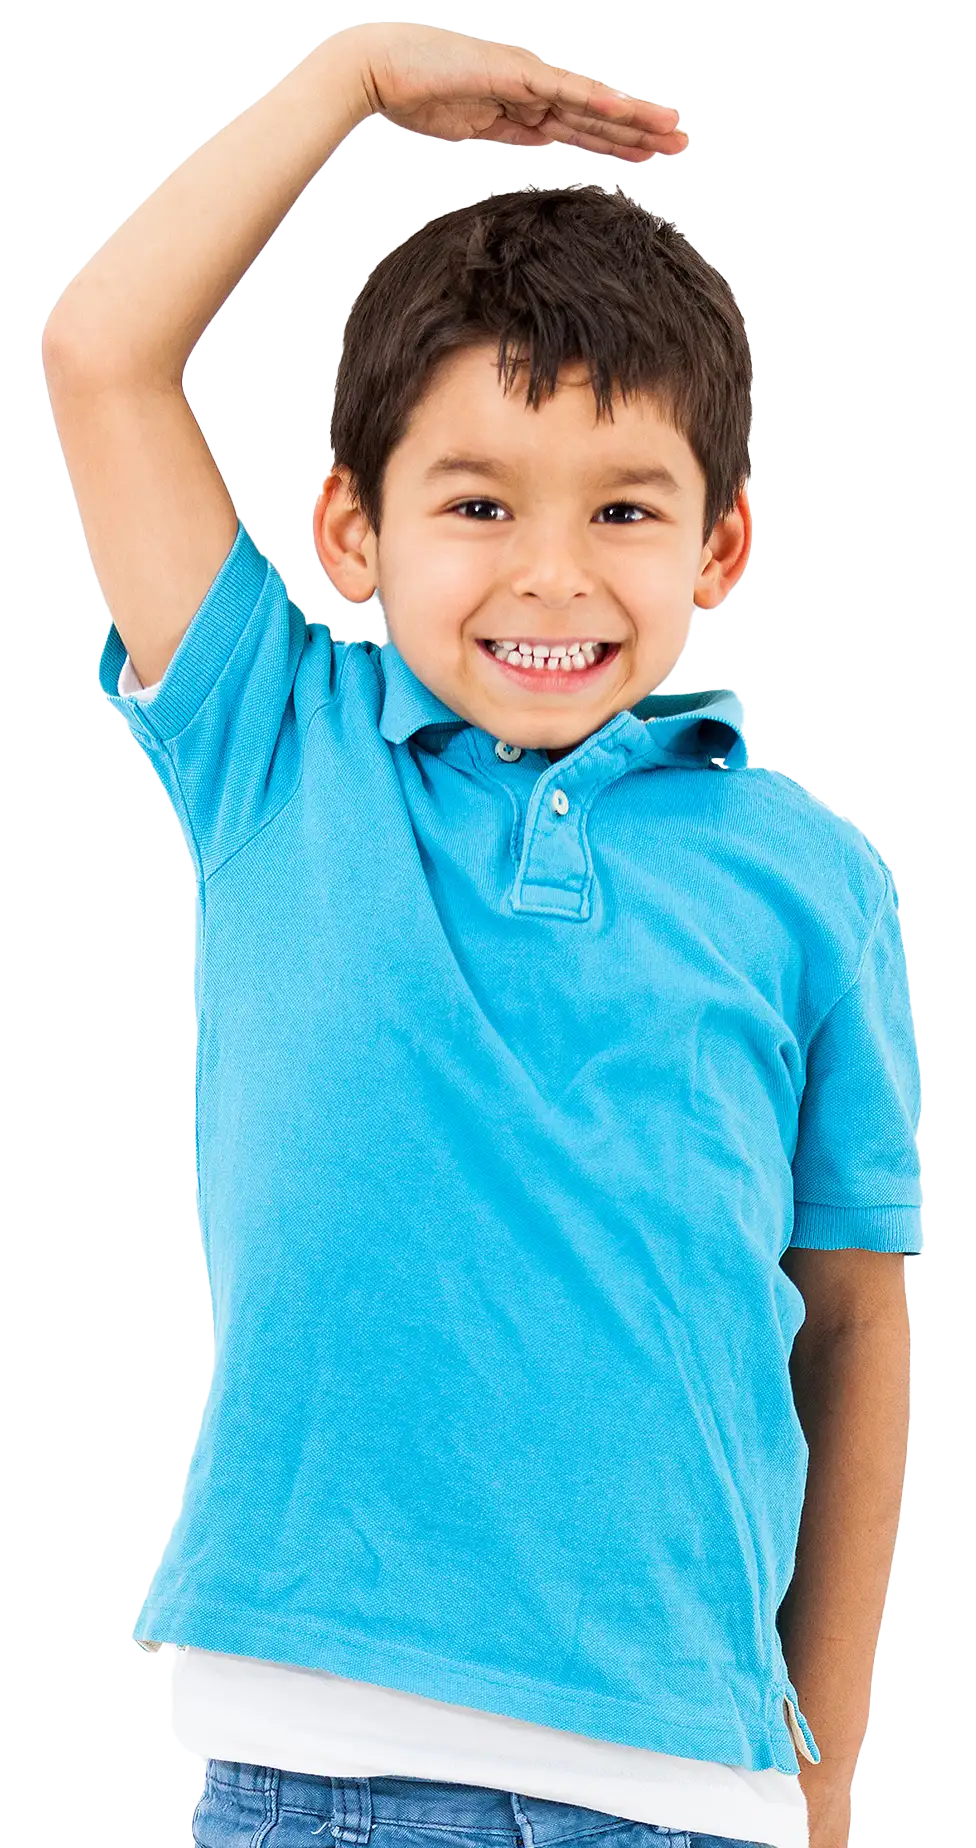 niño con playera de color azul con la mano en la cabeza sonriendo